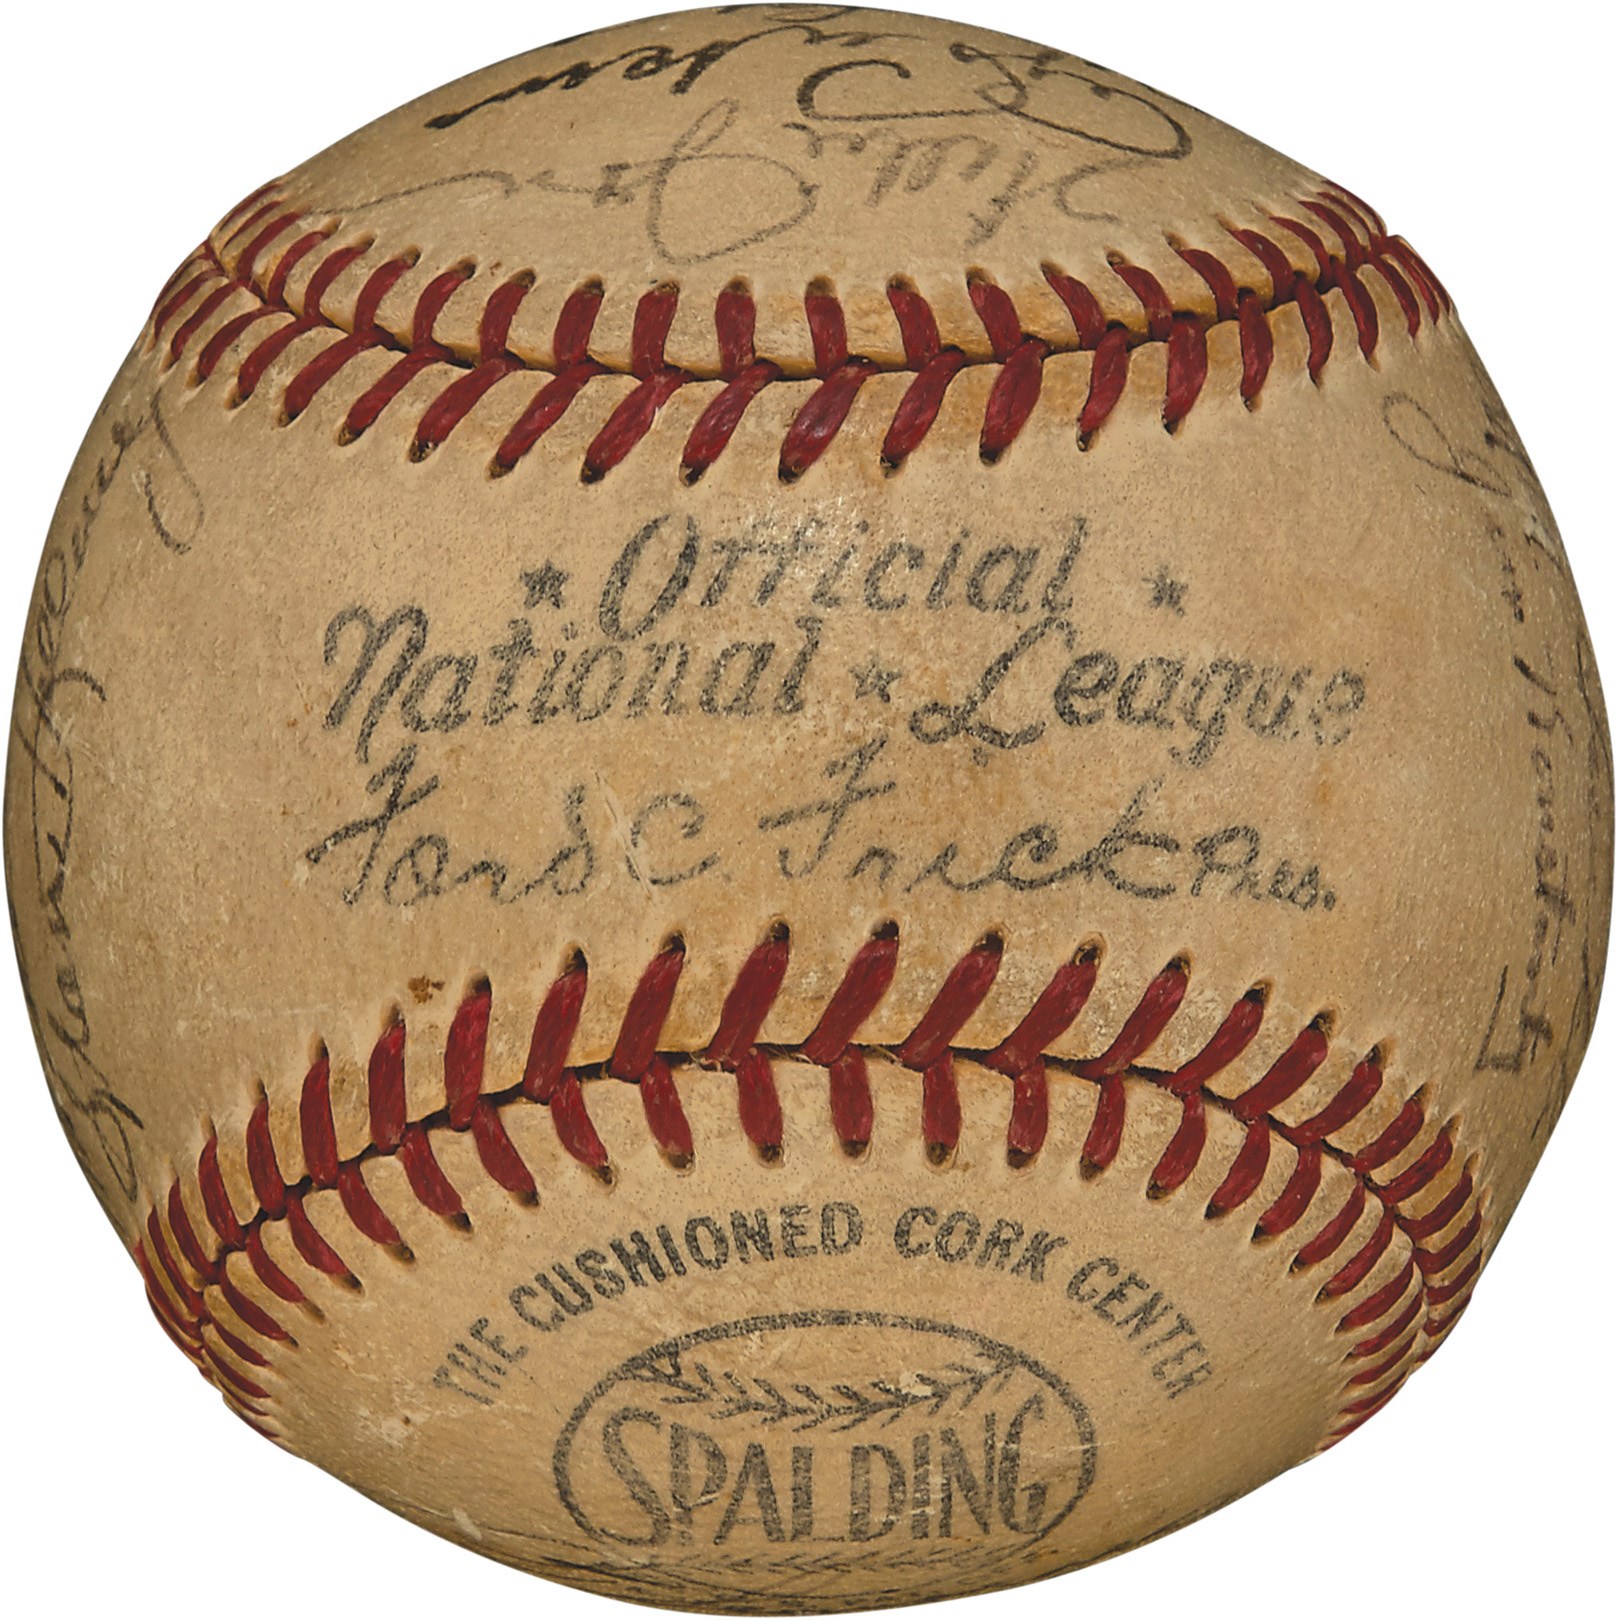 Internet Only - 1949 Philadelphia Phillies Signed Baseball